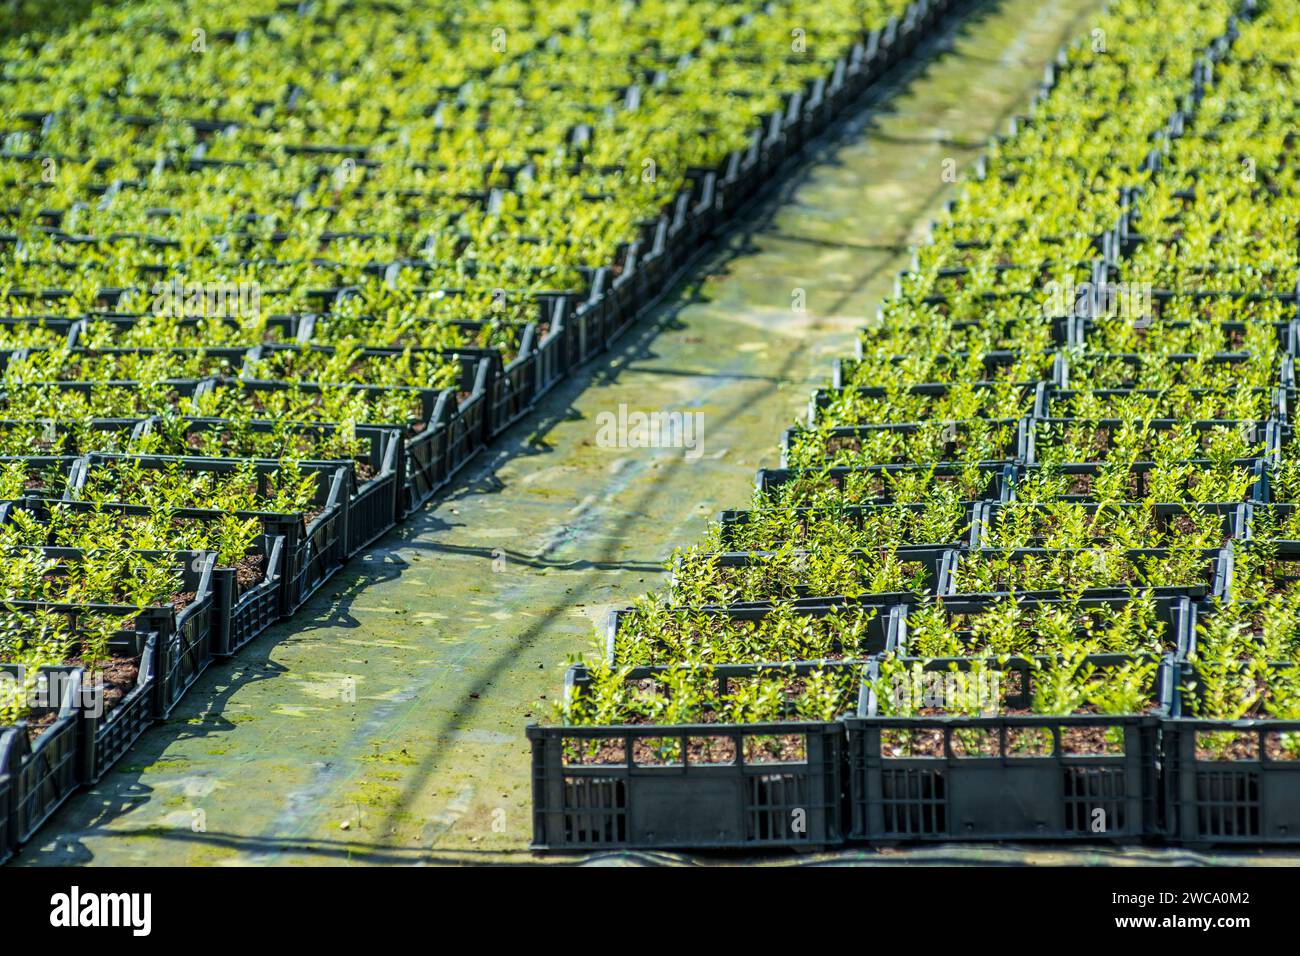 Dall'alto di molti vassoi di plastica disposti in file sul pavimento della serra con piantine verdi fresche che crescono nell'area delle piantagioni agricole di giorno Foto Stock